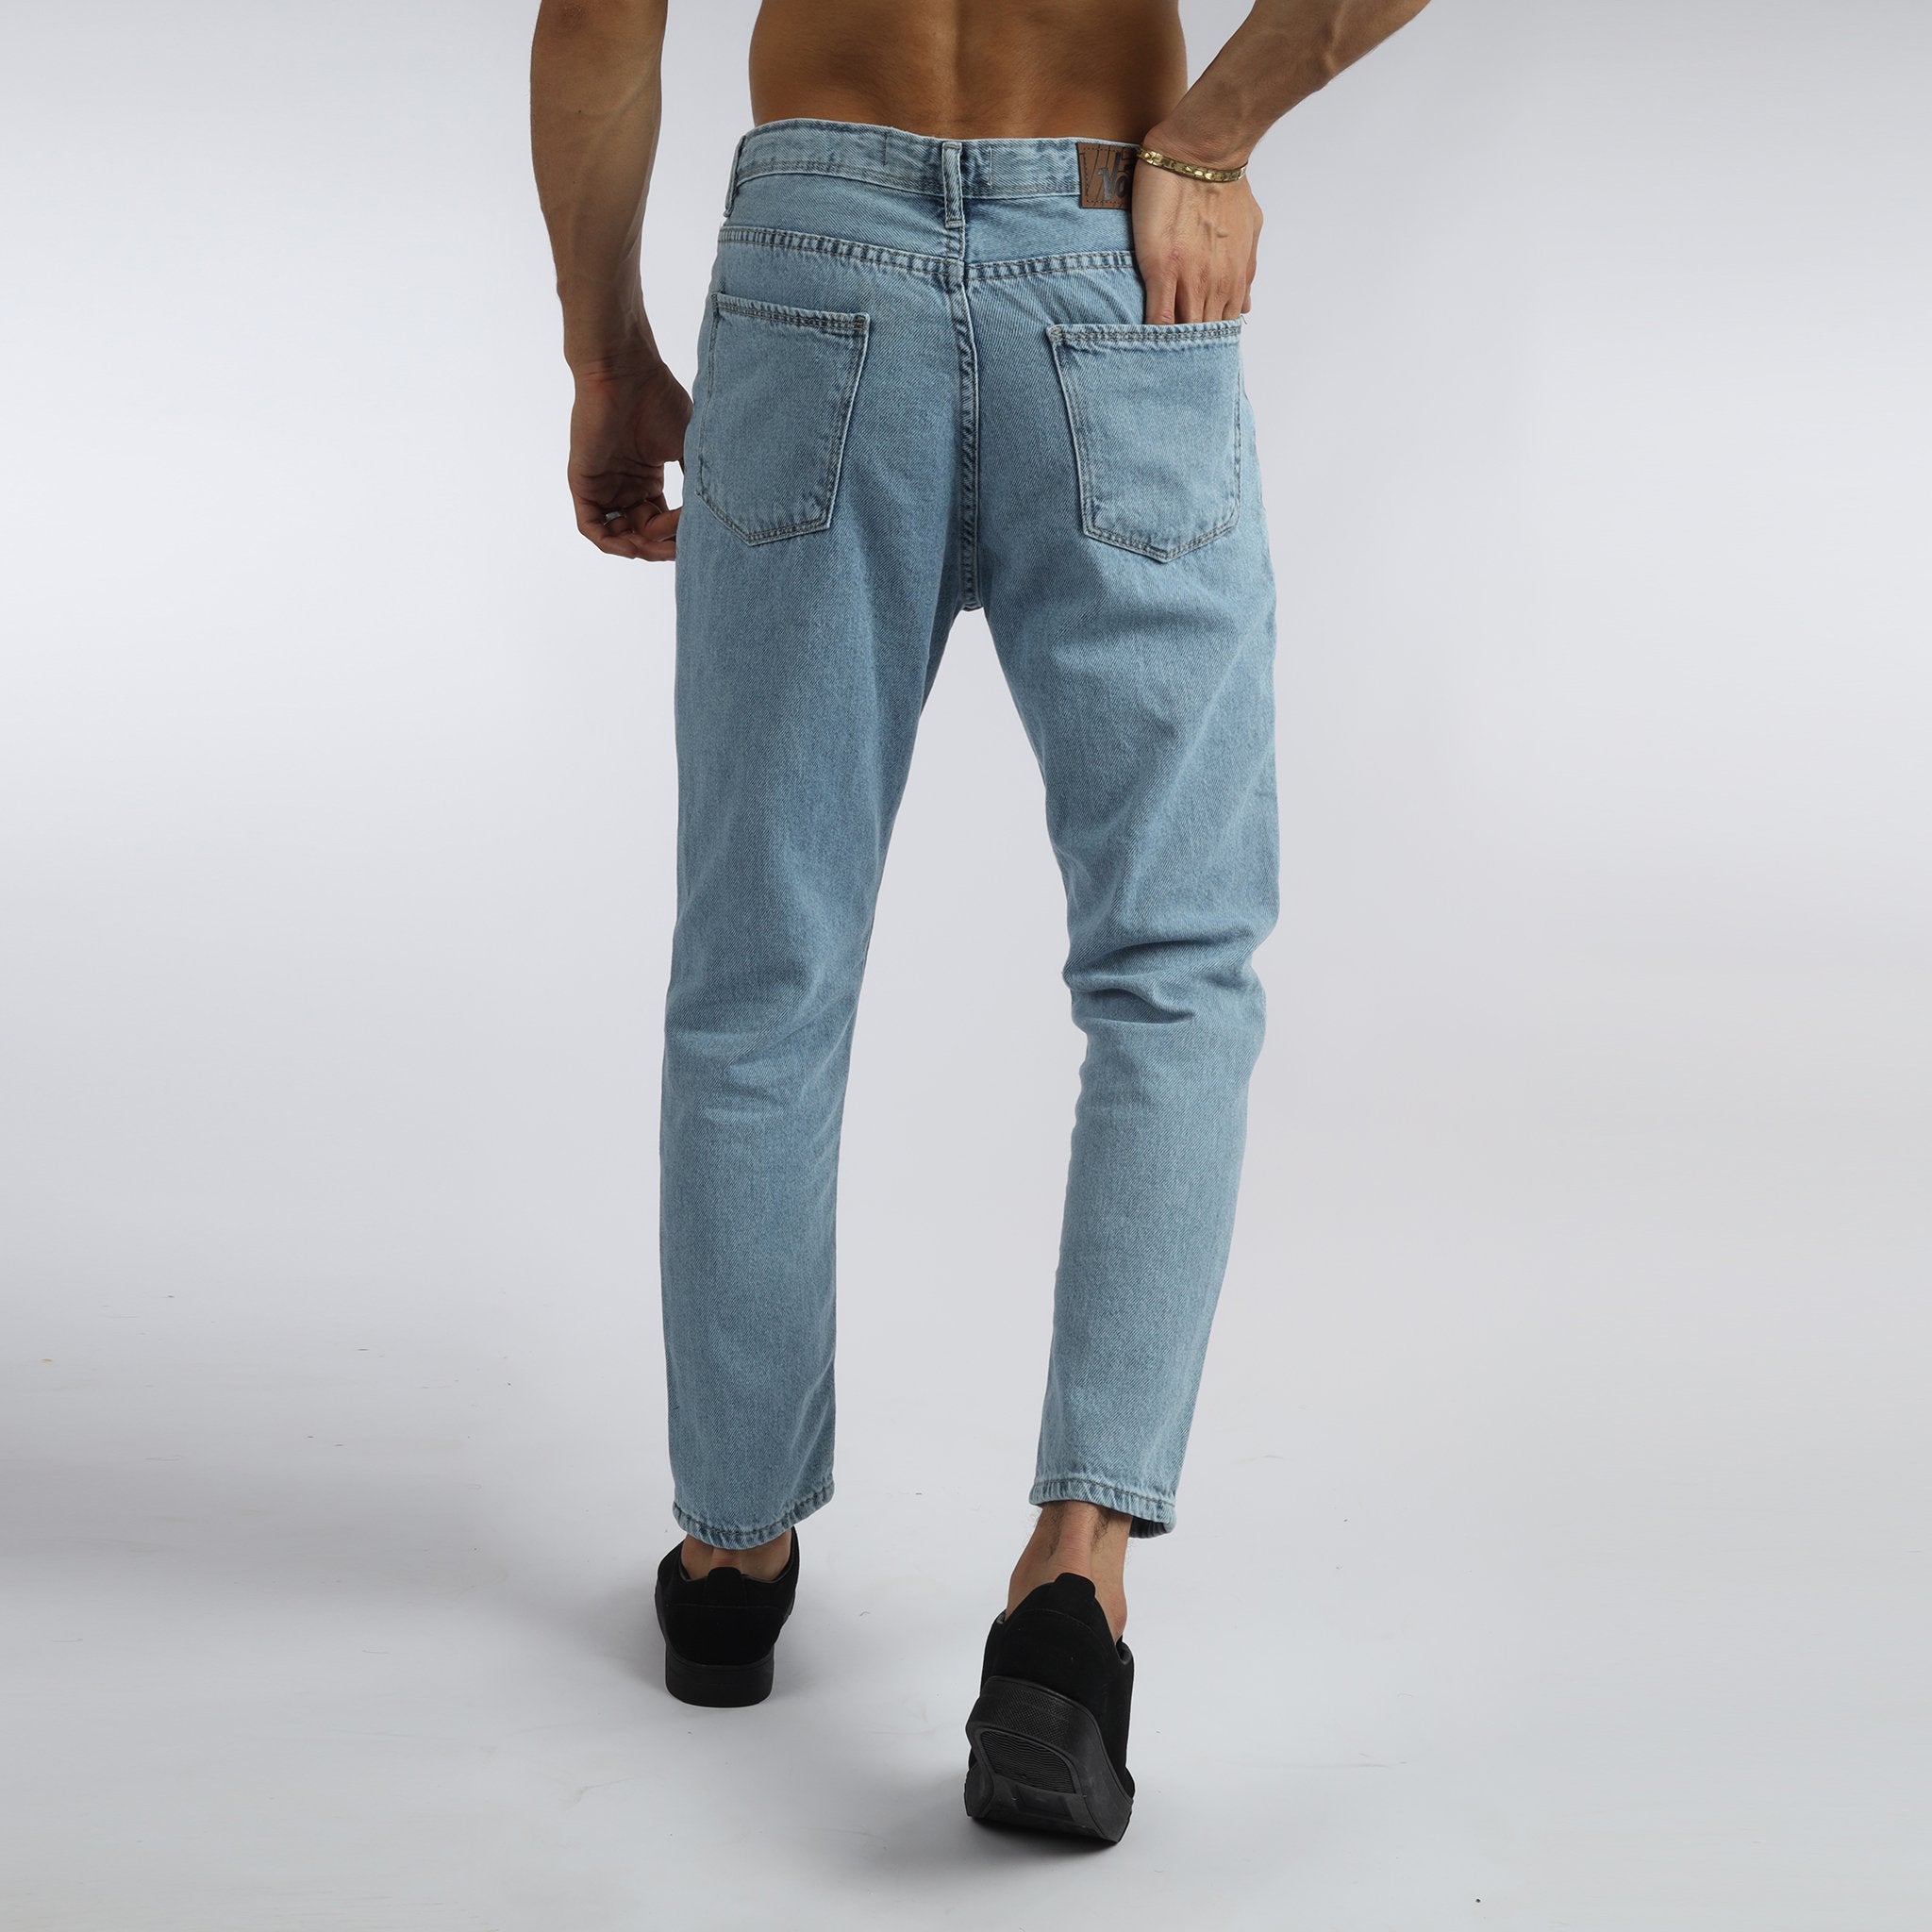 Vote- Boyfriend Trousers-Steel blue jeans